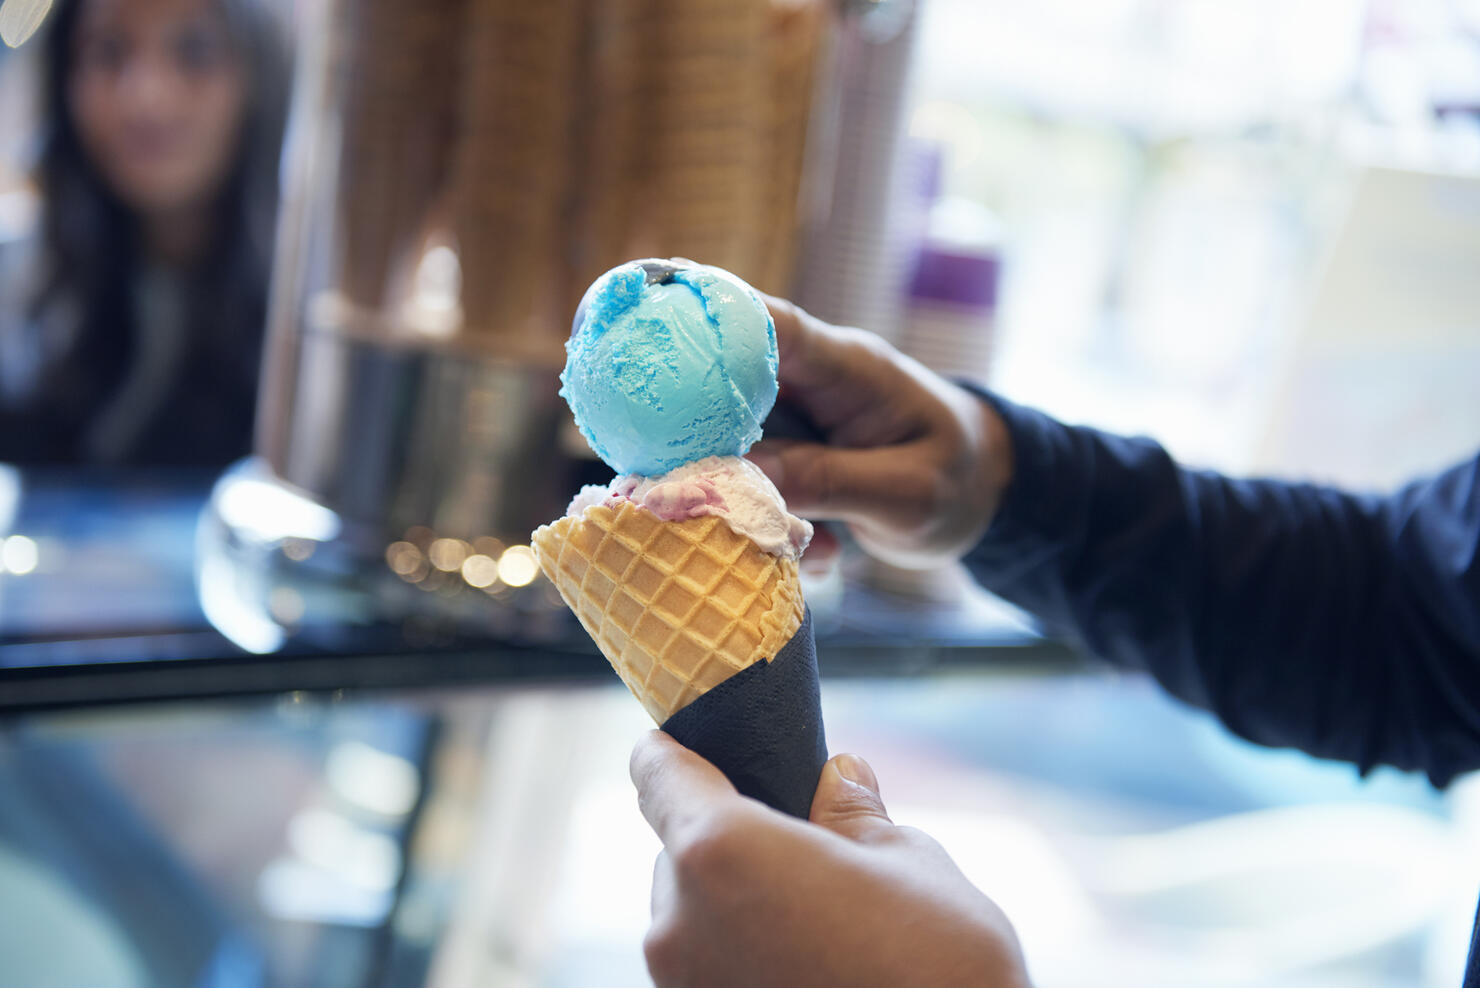 Man scooping ice cream onto cone